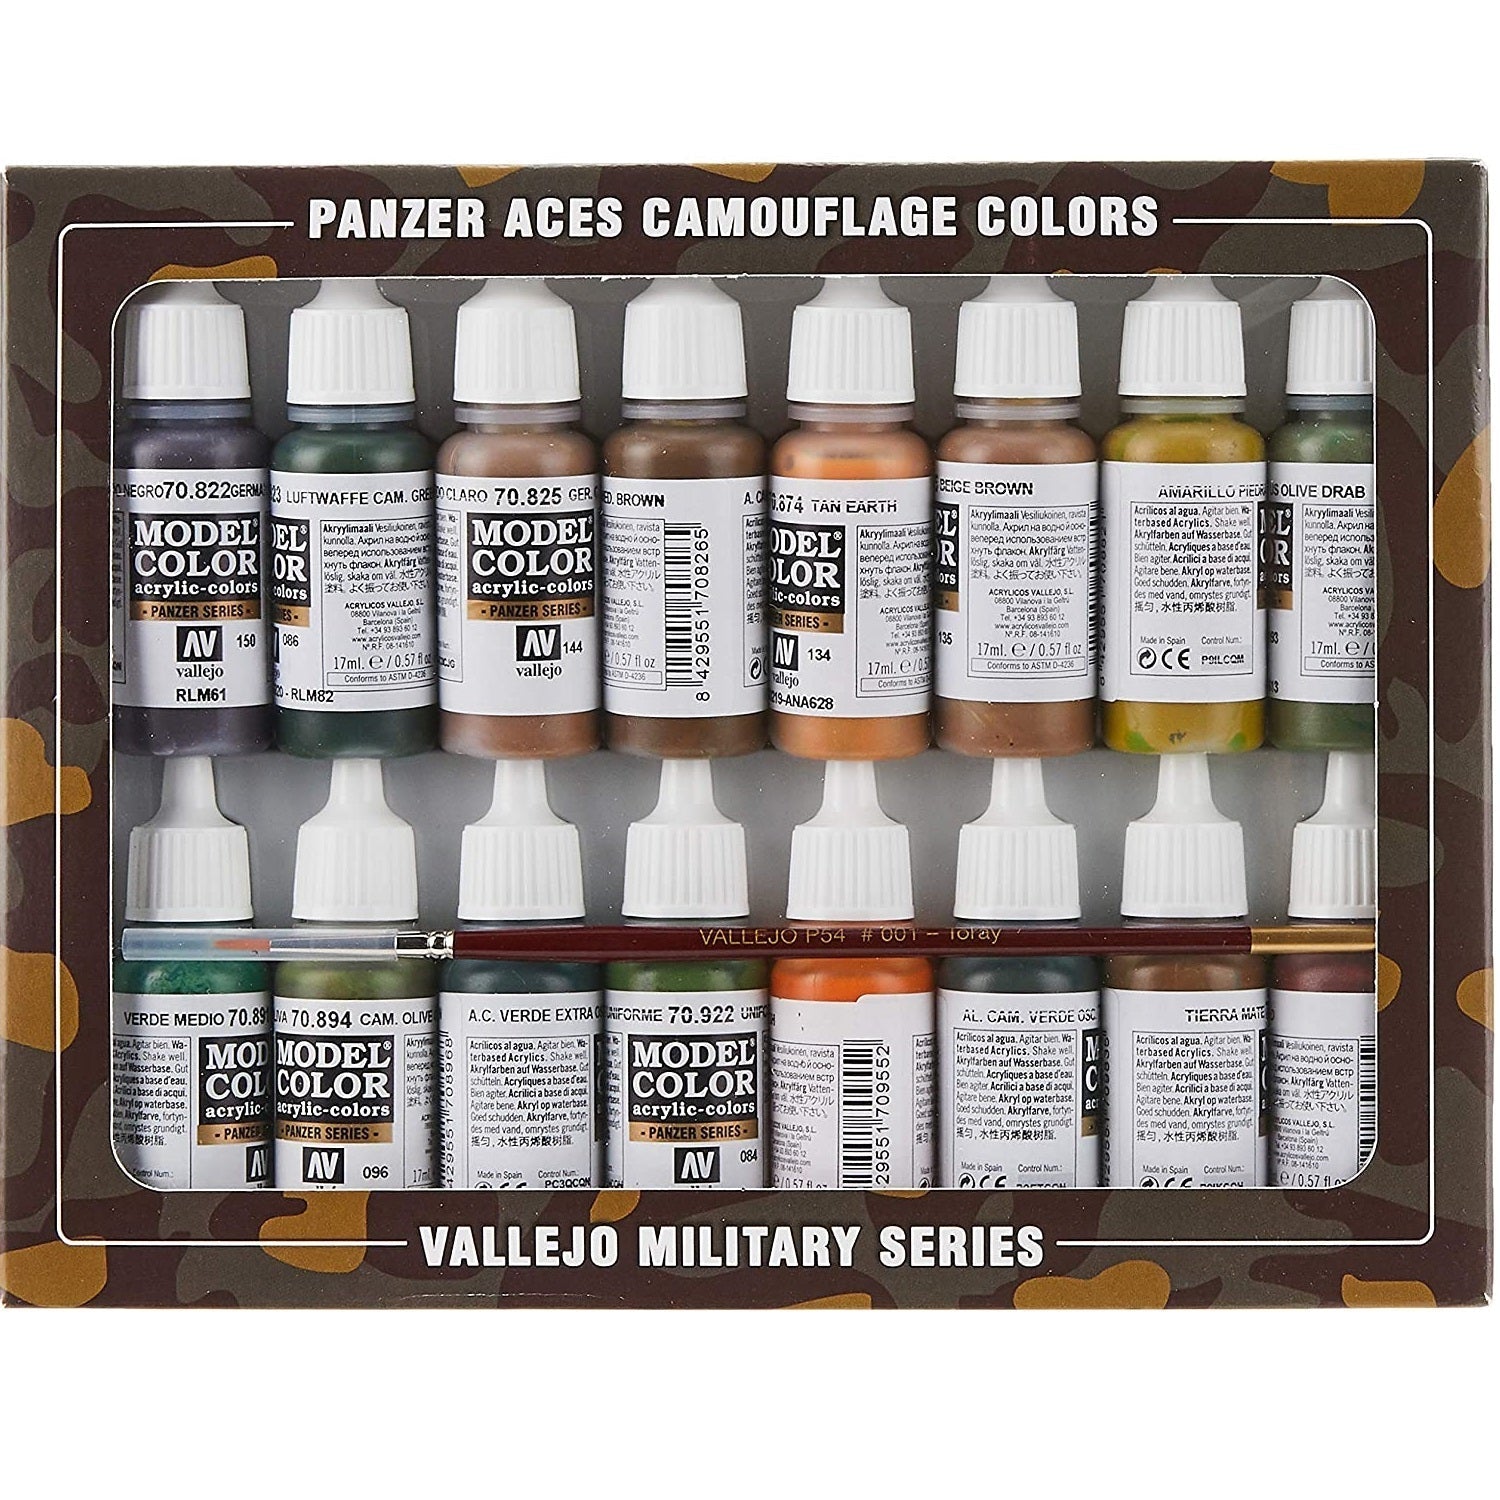 Acrylicos Vallejo Panzer Aces Camouflage Model Color Paint Set, 1/2 fl. oz. bottles, 16 Colors